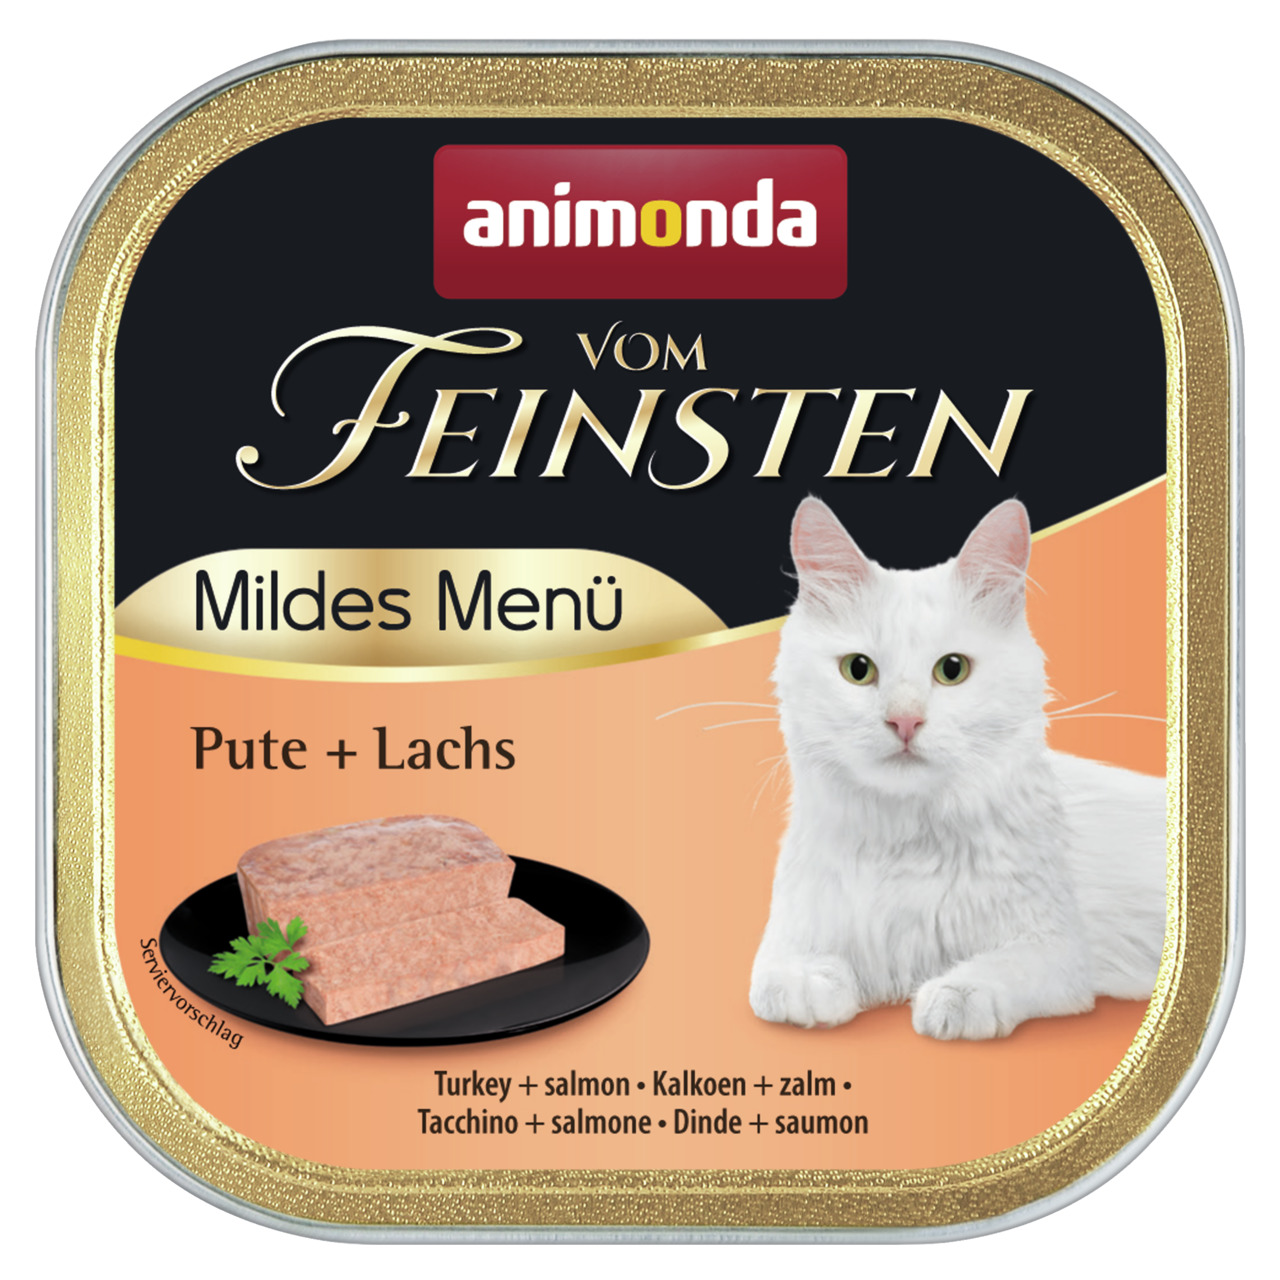 Animonda vom Feinsten Mildes Menü Pute + Lachs Katzen Nassfutter 100 g